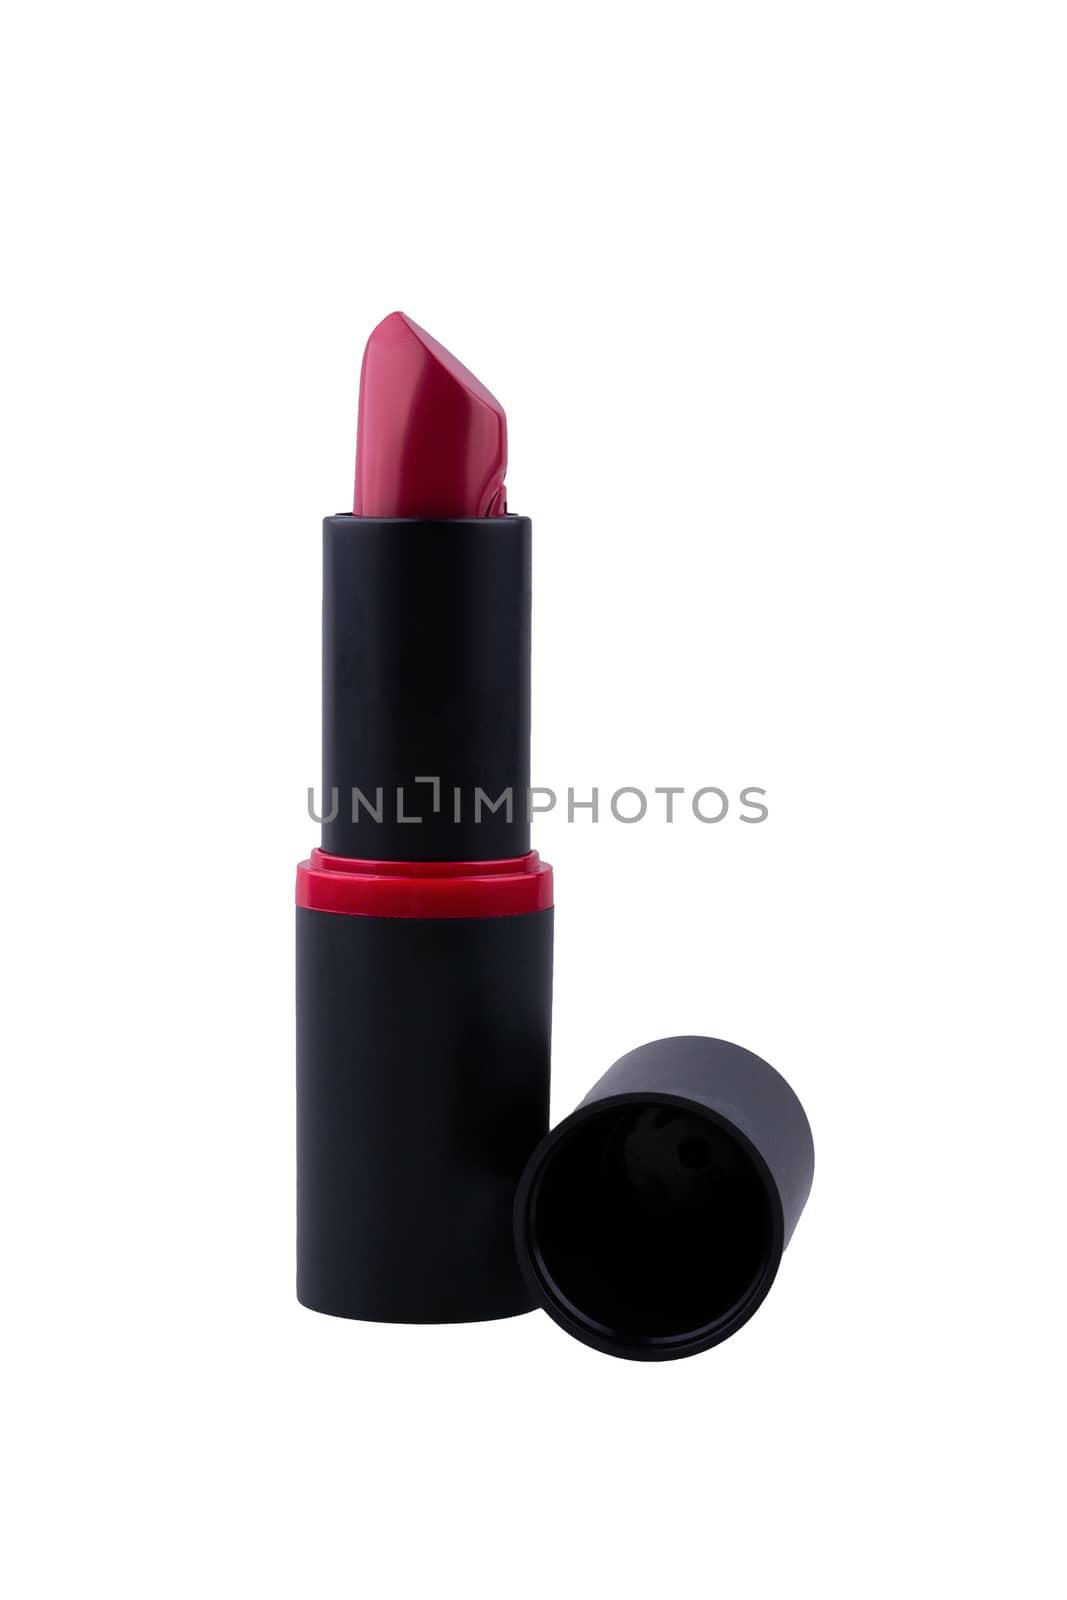 Lipstick on a white background by neryx